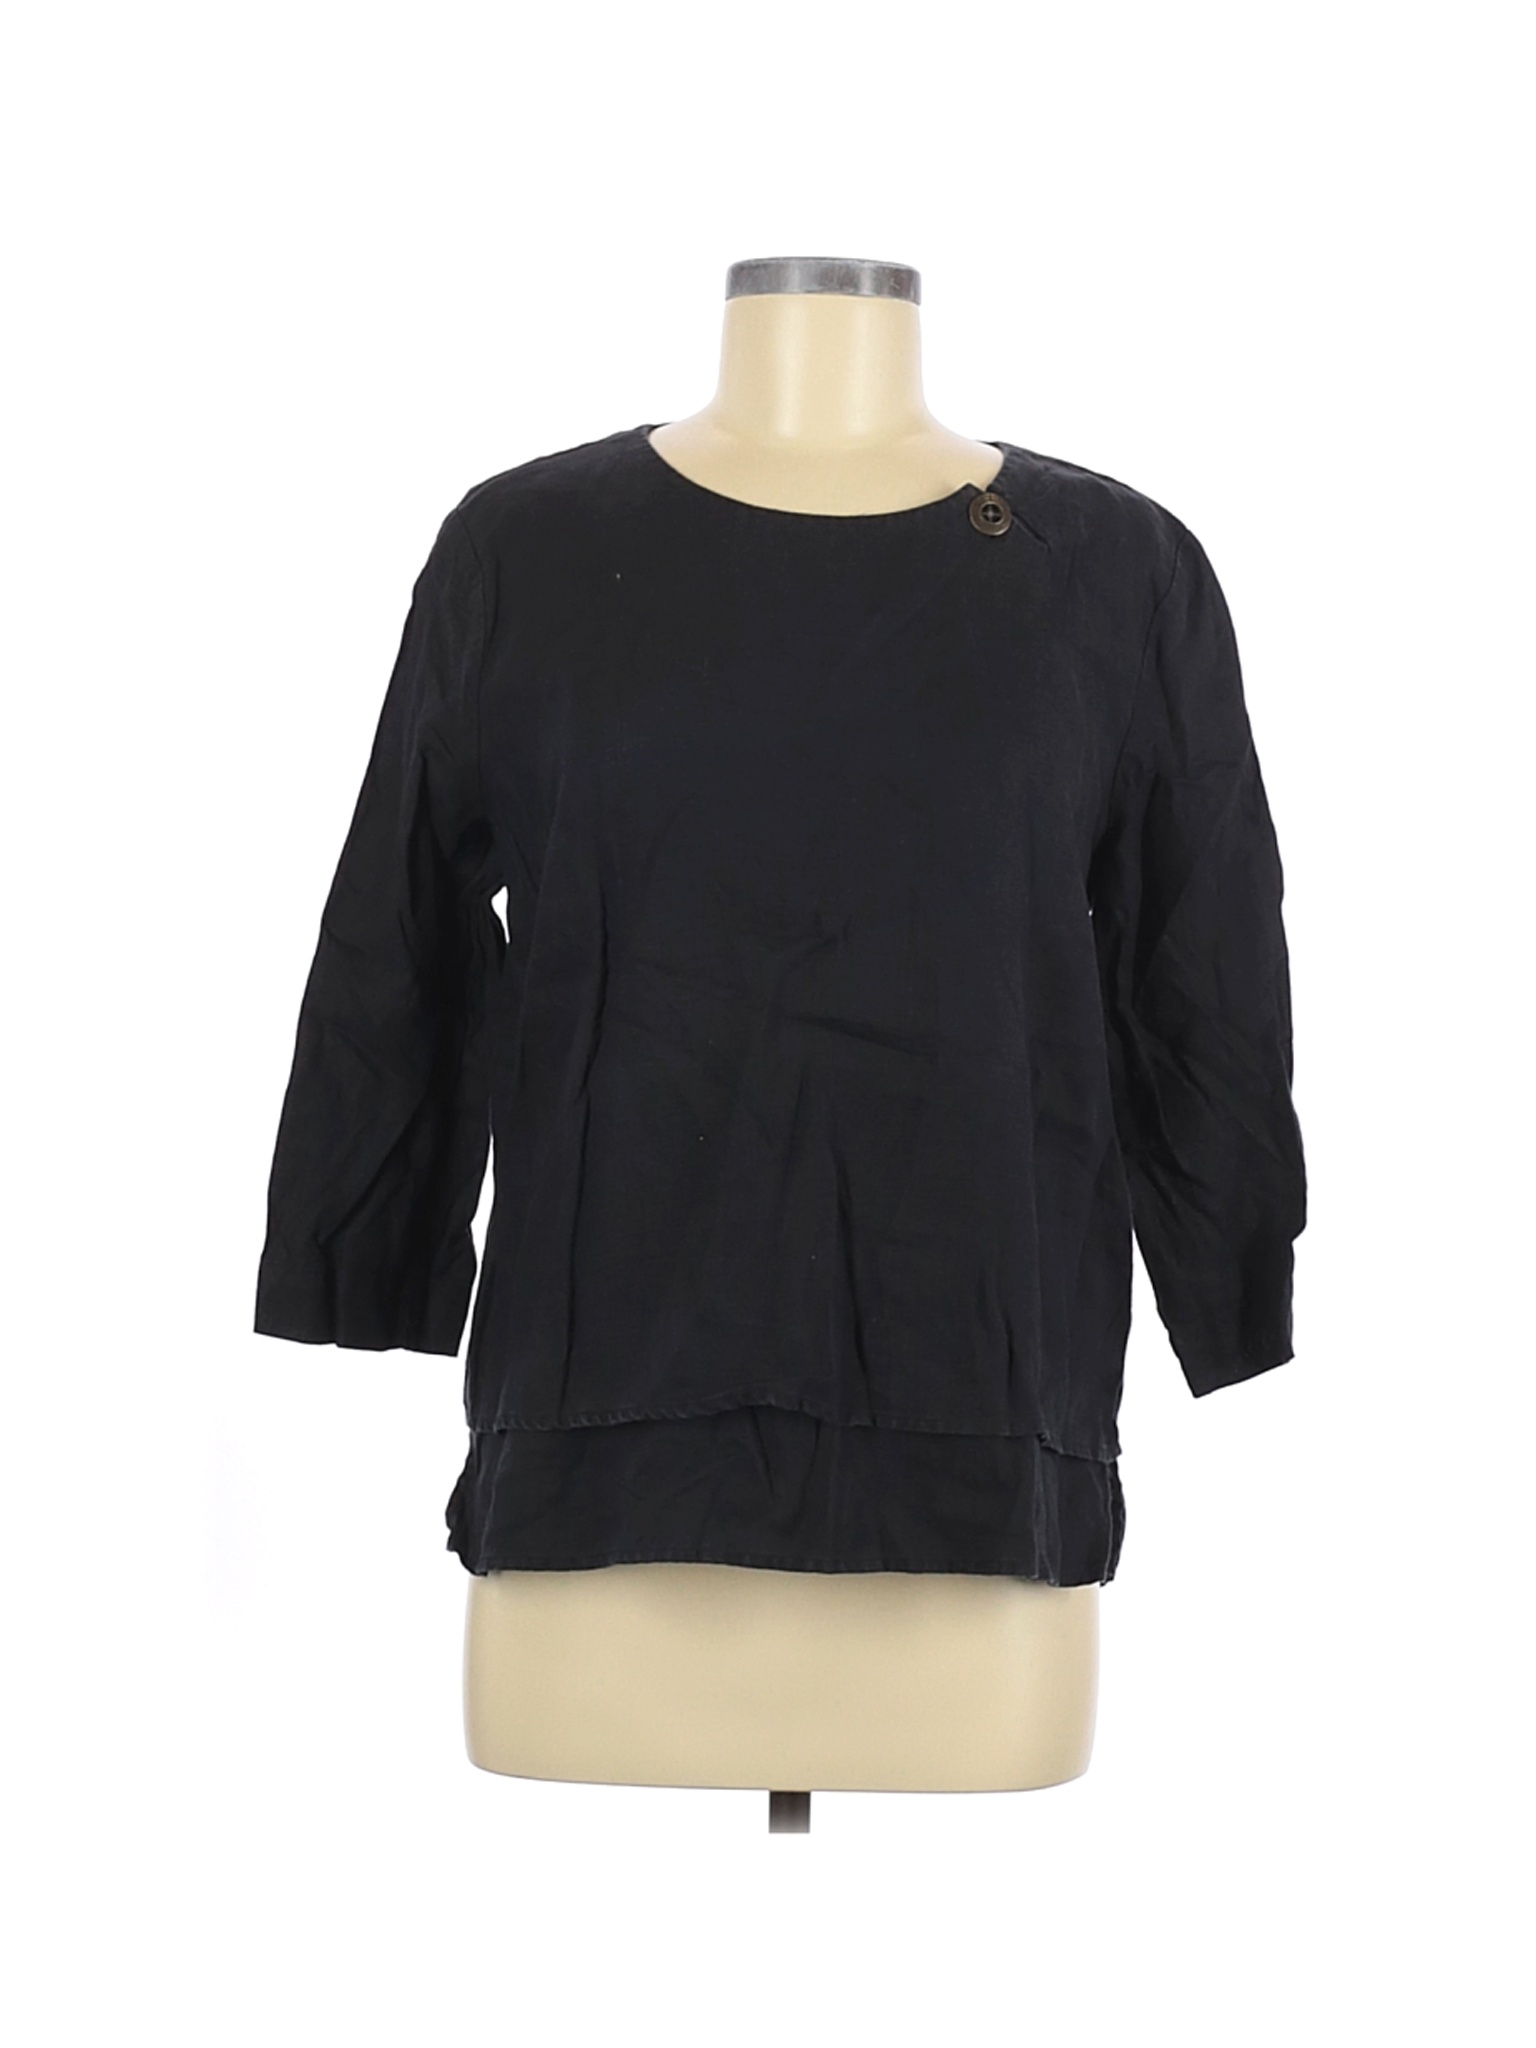 Orvis Women Black 3/4 Sleeve Blouse M | eBay